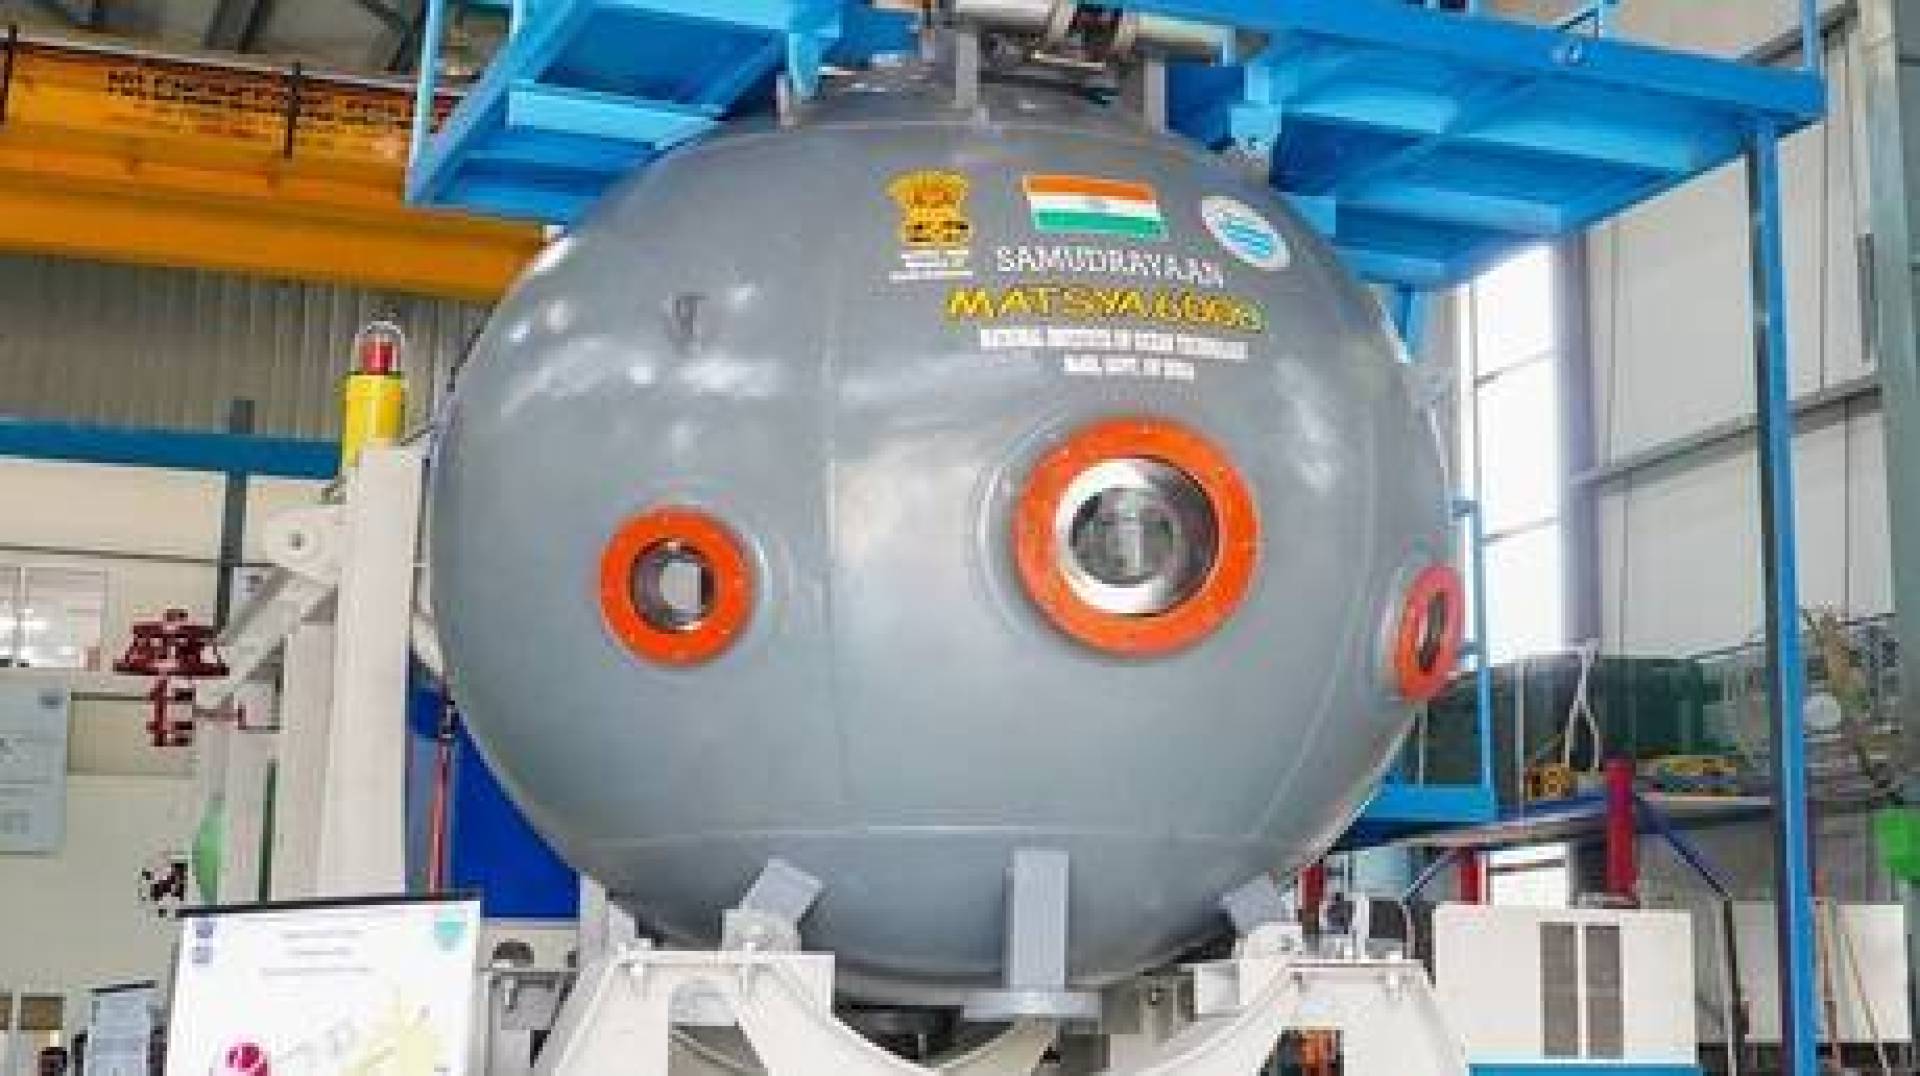 بعد الوصول إلى القمر: الهند تستعد لاستكشاف أسرار البحار بواسطة غواصة مأهولة